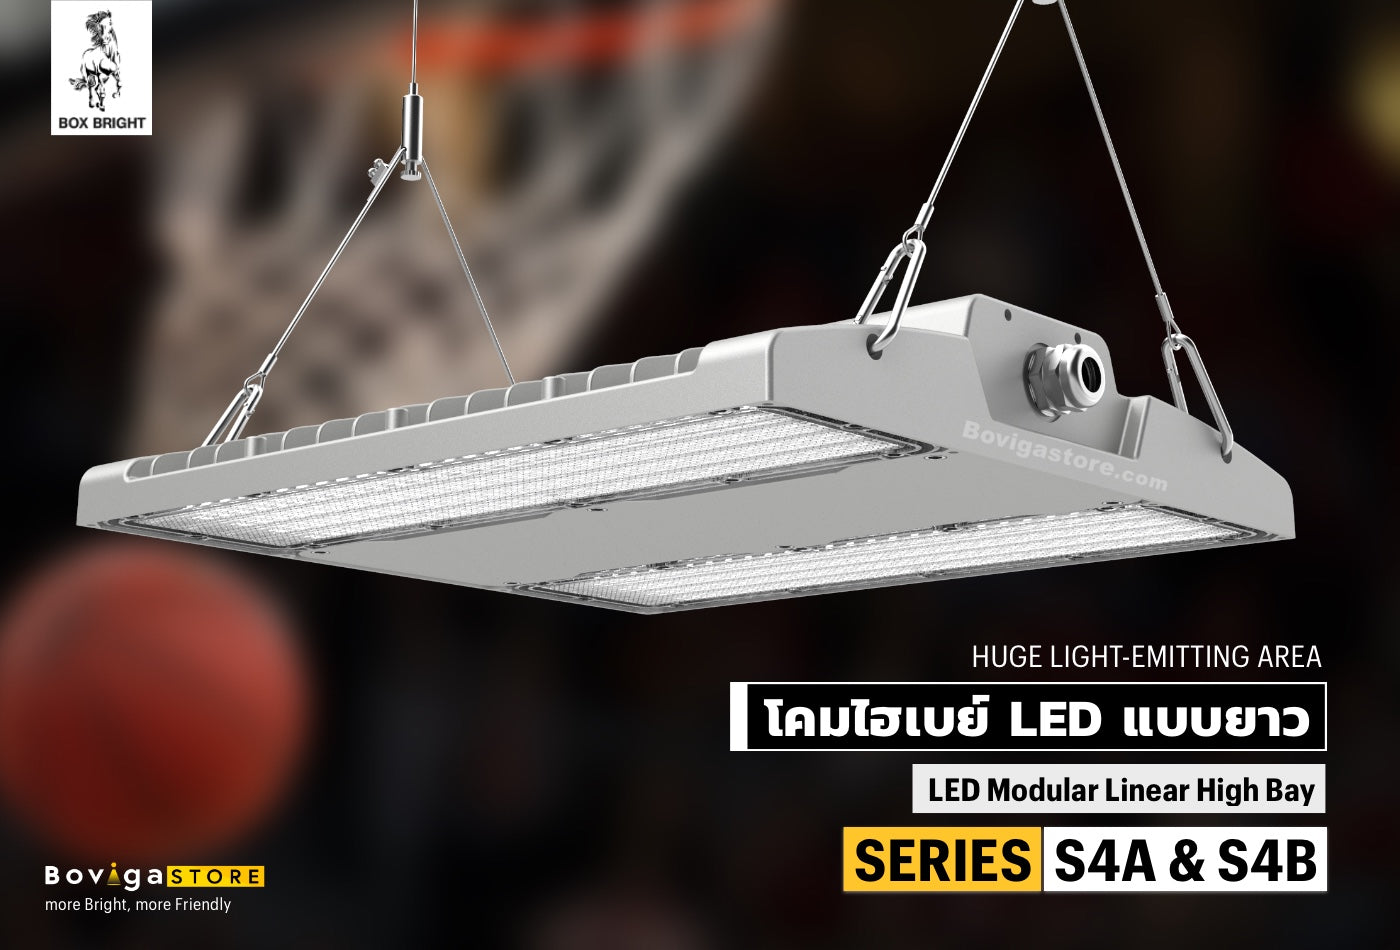 โคมไฮเบย์ LED แบบยาว รุ่น SERIES S4A & S4B แบรนด์ BOX BRIGHT